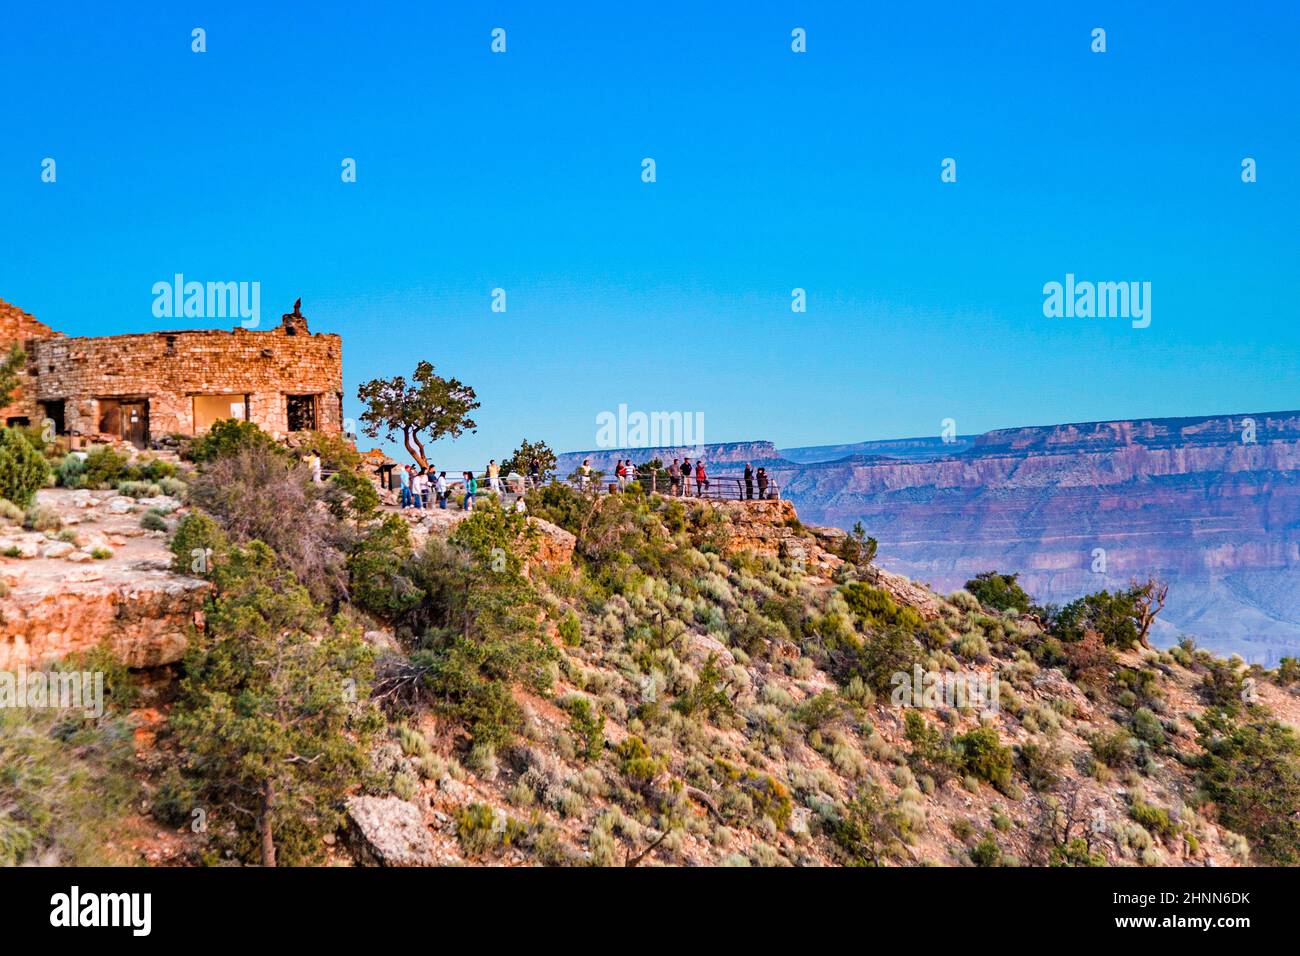 La gente gode della vista dal punto di Yaki alla valle del Grand canyon con il fiume Colorado Foto Stock